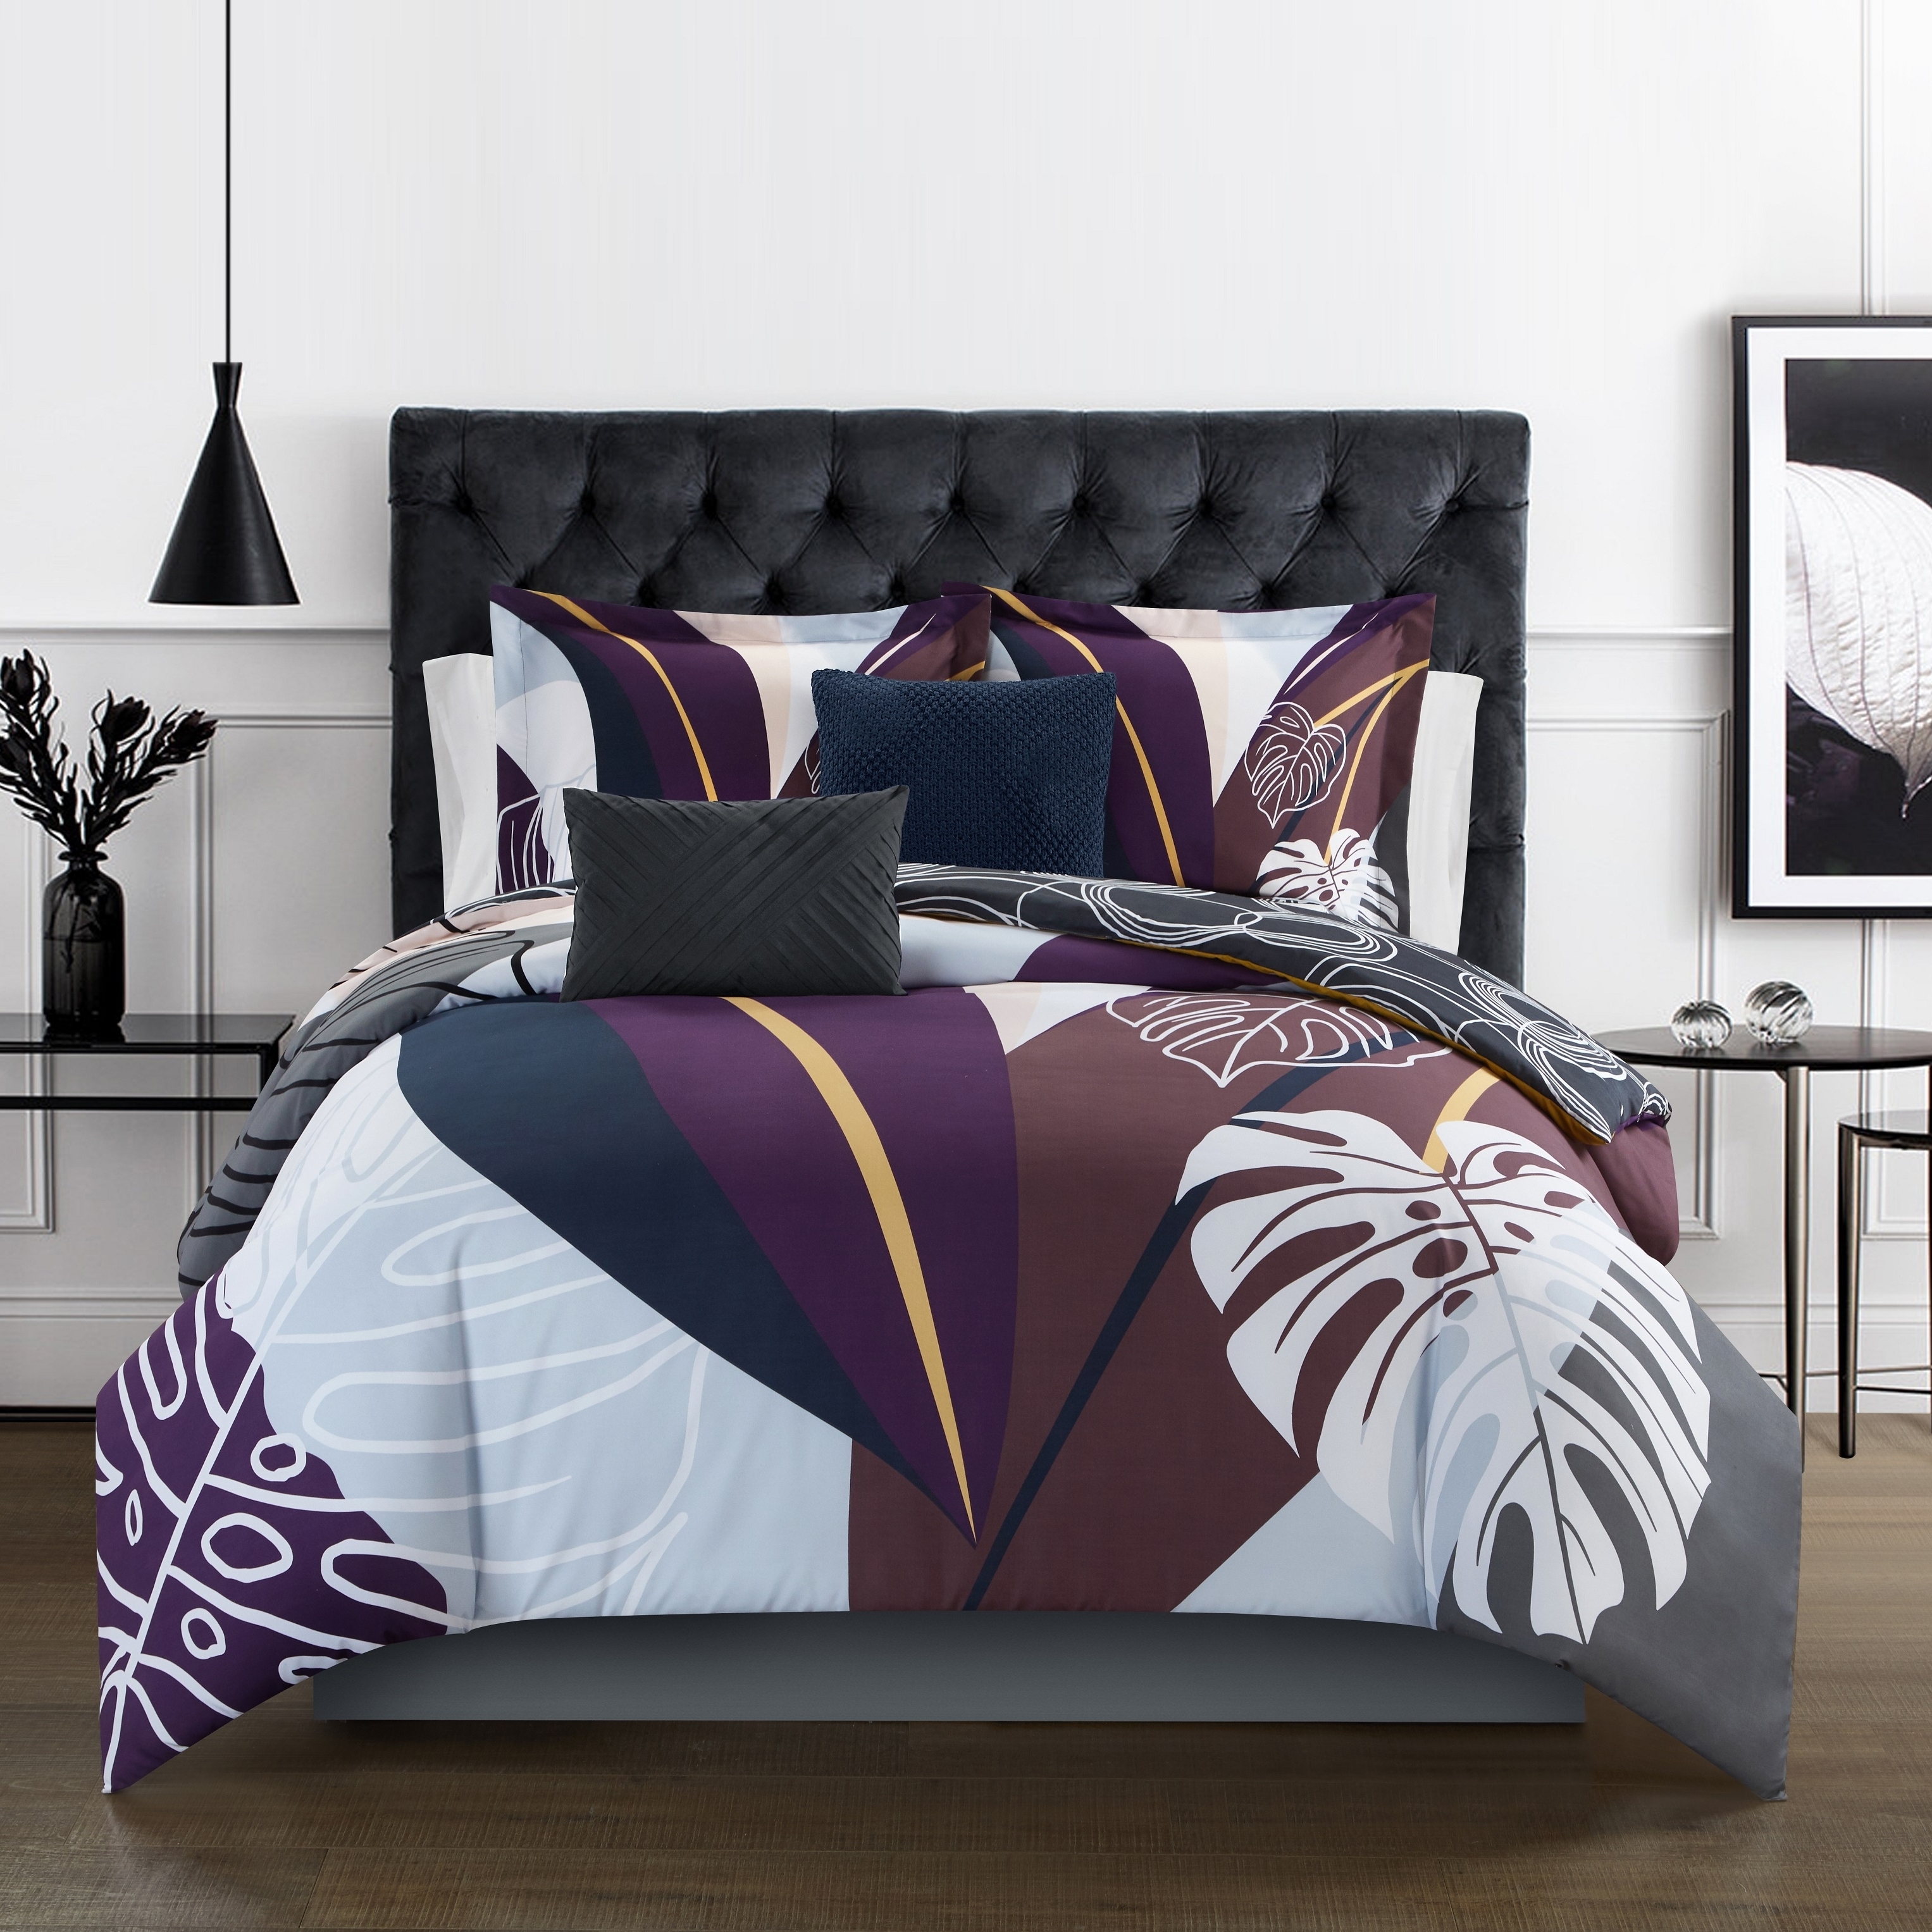 Emeraude 3 Piece Reversible Quilt Set Floral Print Cursive Script Design Bedding - Blue, Twin